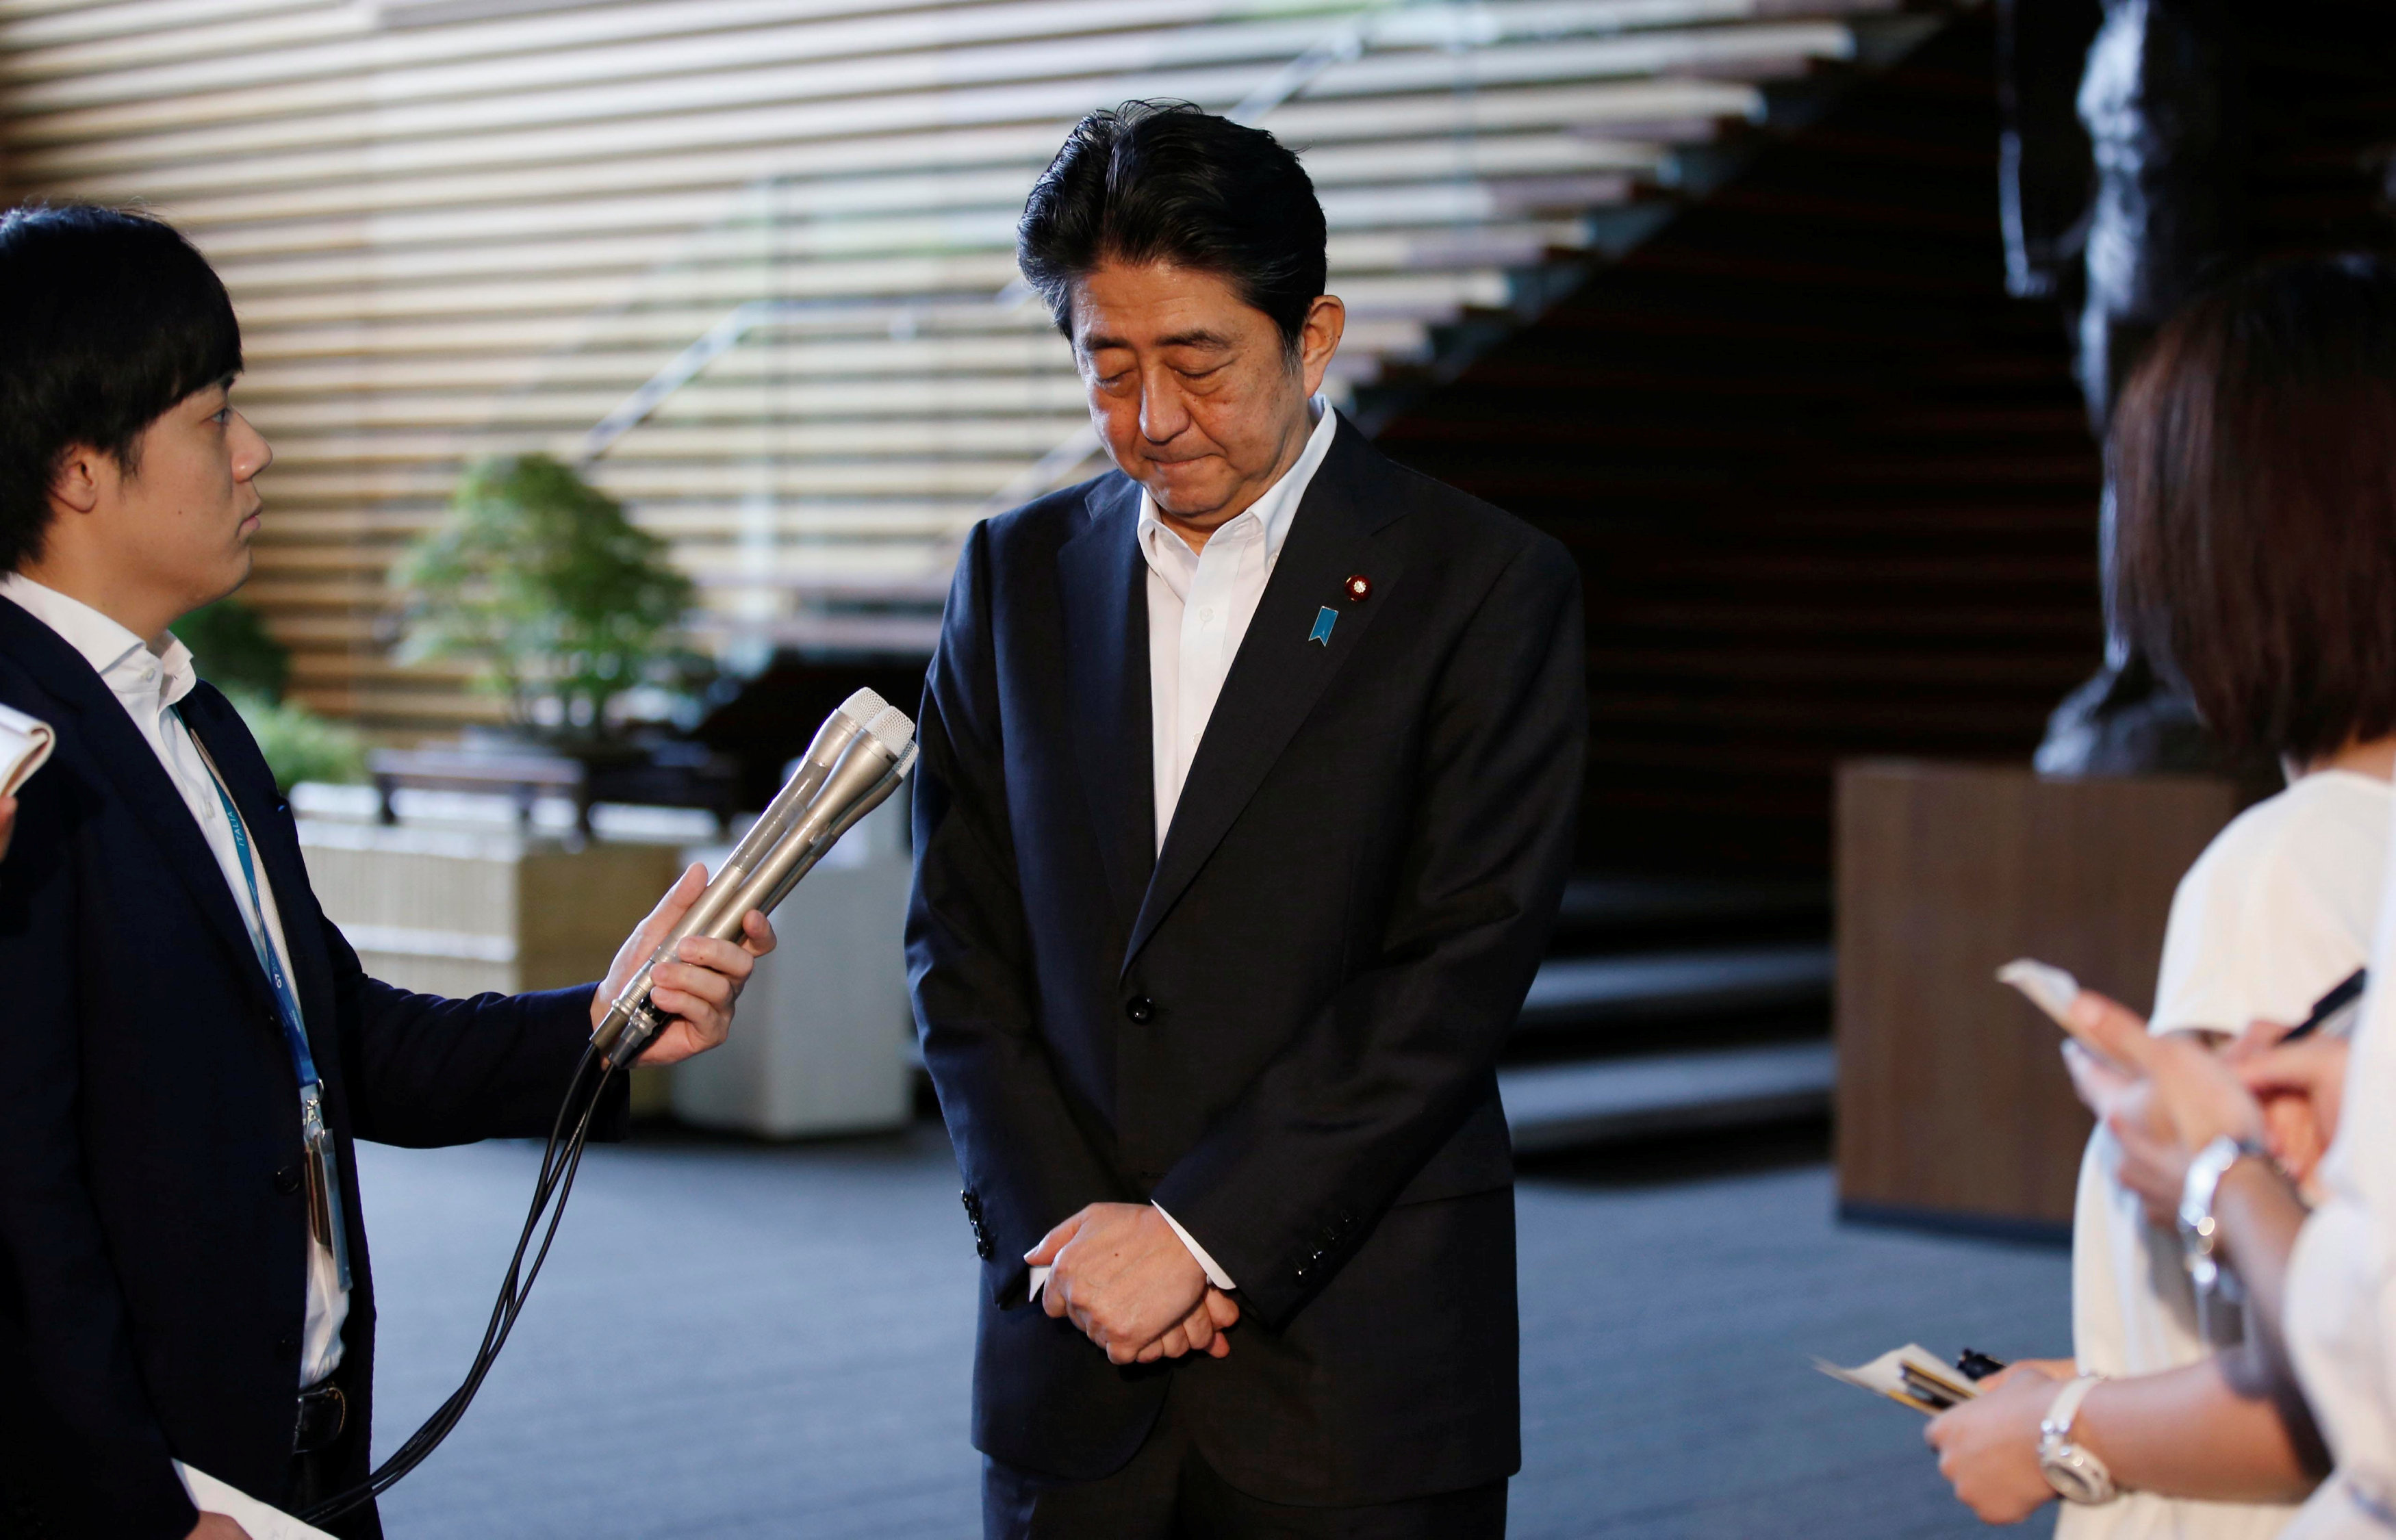 رئيس الوزراء اليابانى يتحدث إلى الصحفيين